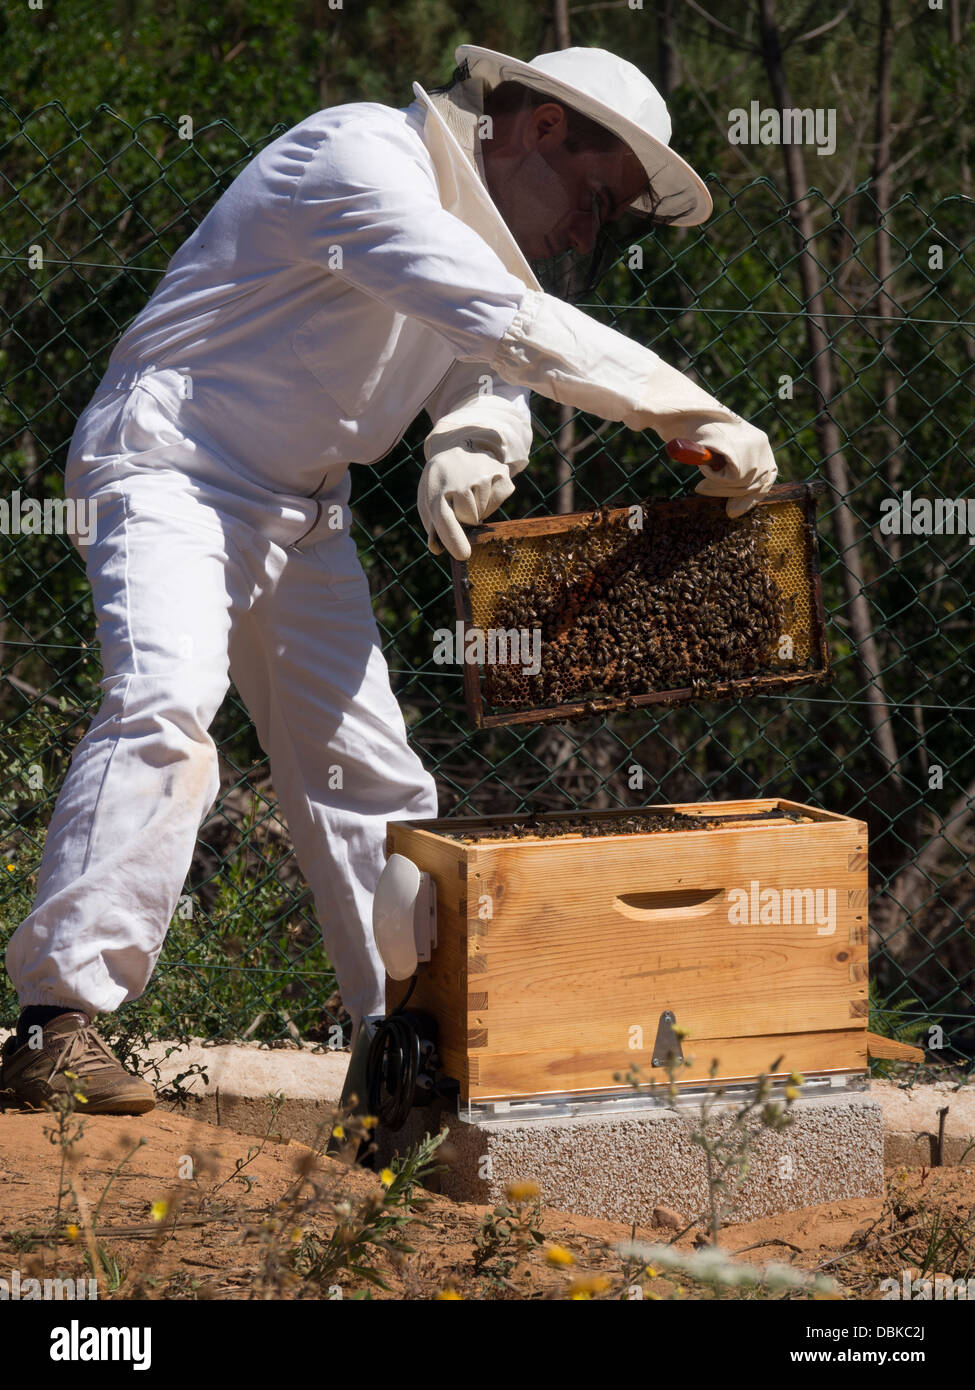 El apicultor en traje de protección eliminando las crías fotograma de colmenas de abejas para recoger la miel Foto de stock